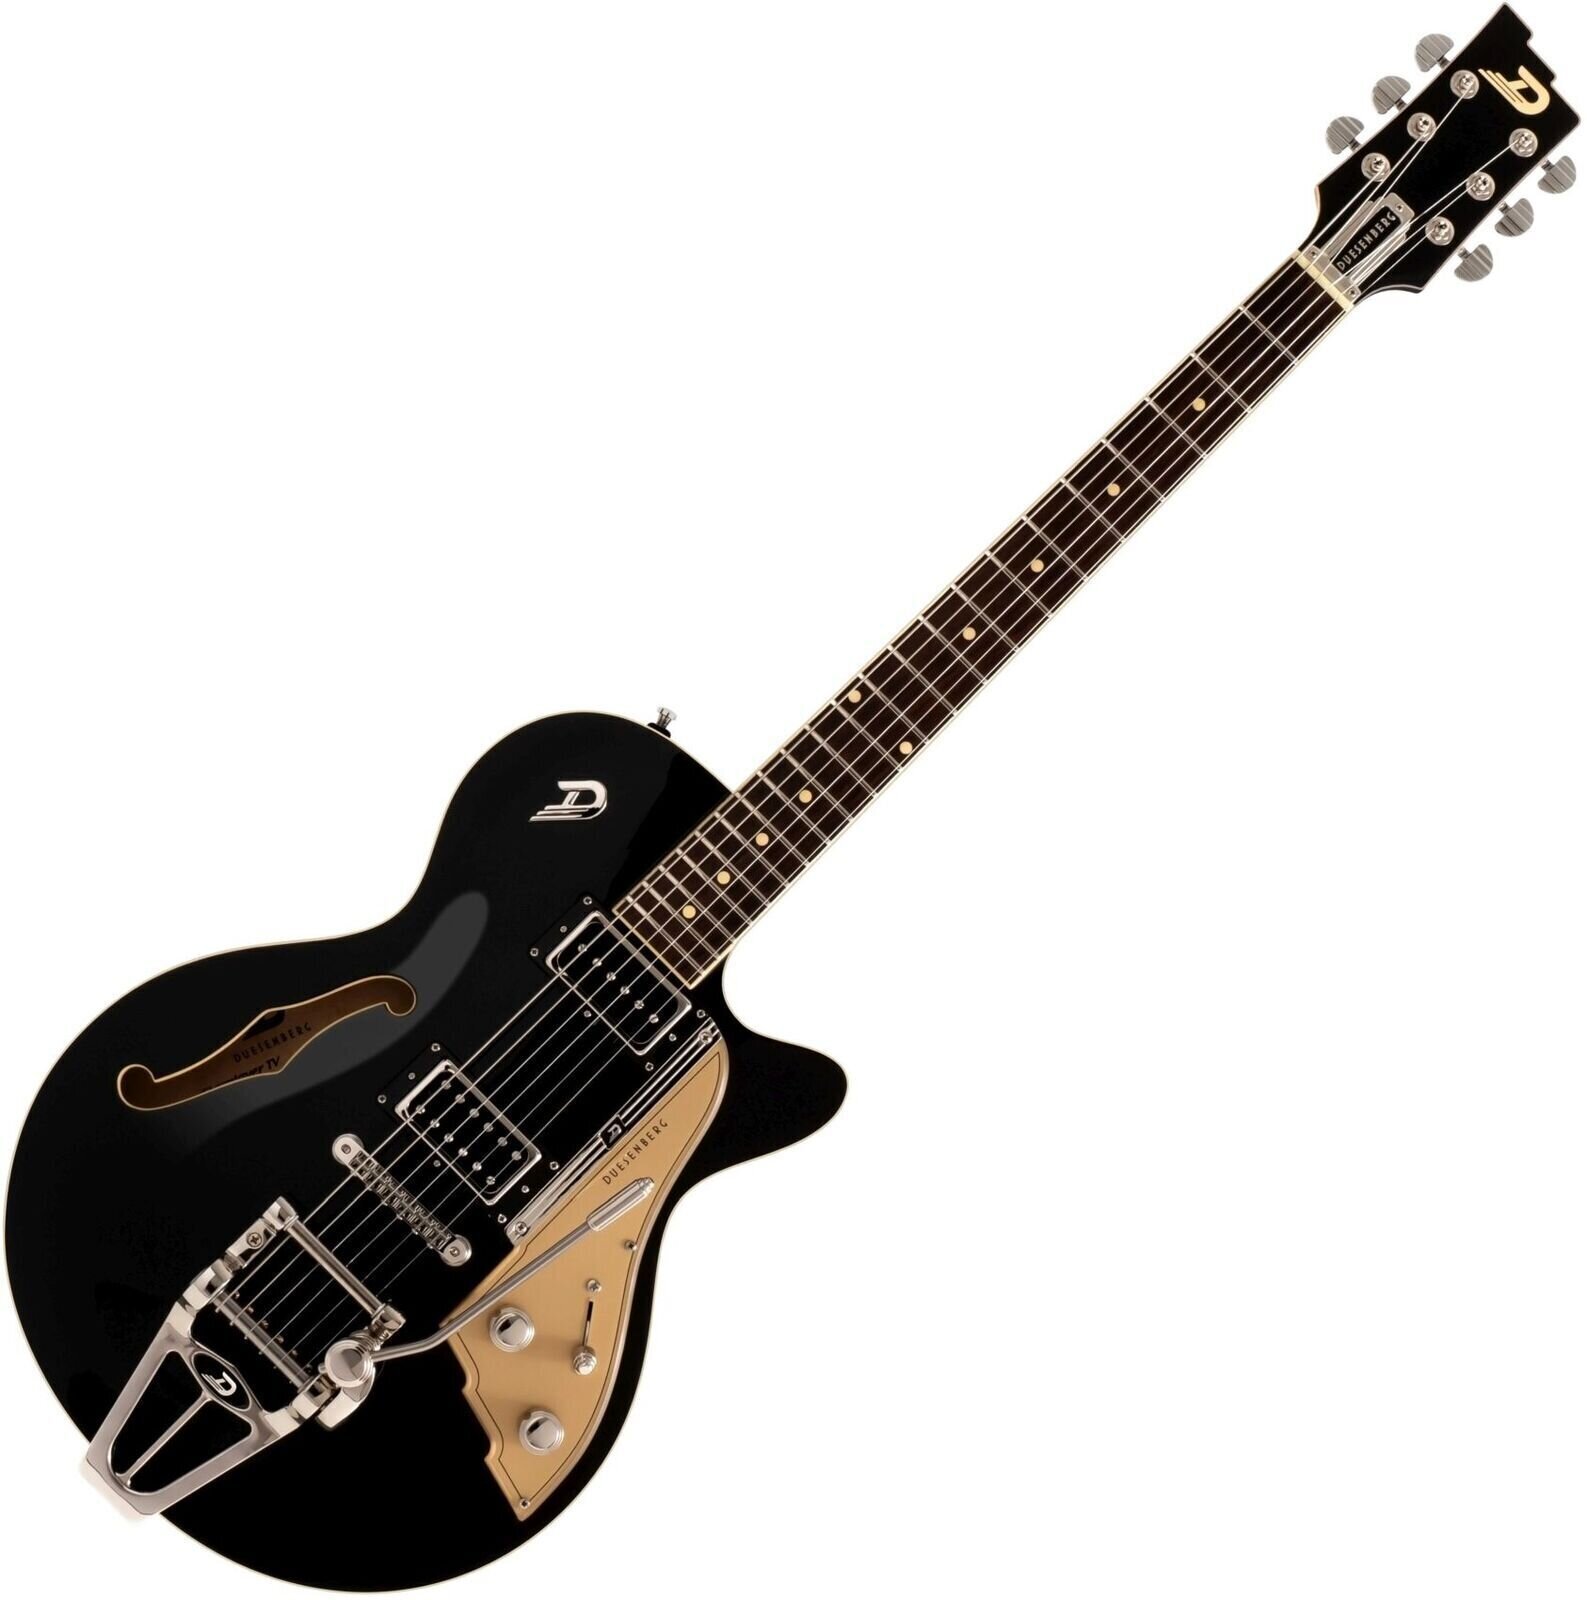 Semiakustická gitara Duesenberg Starplayer TV Black